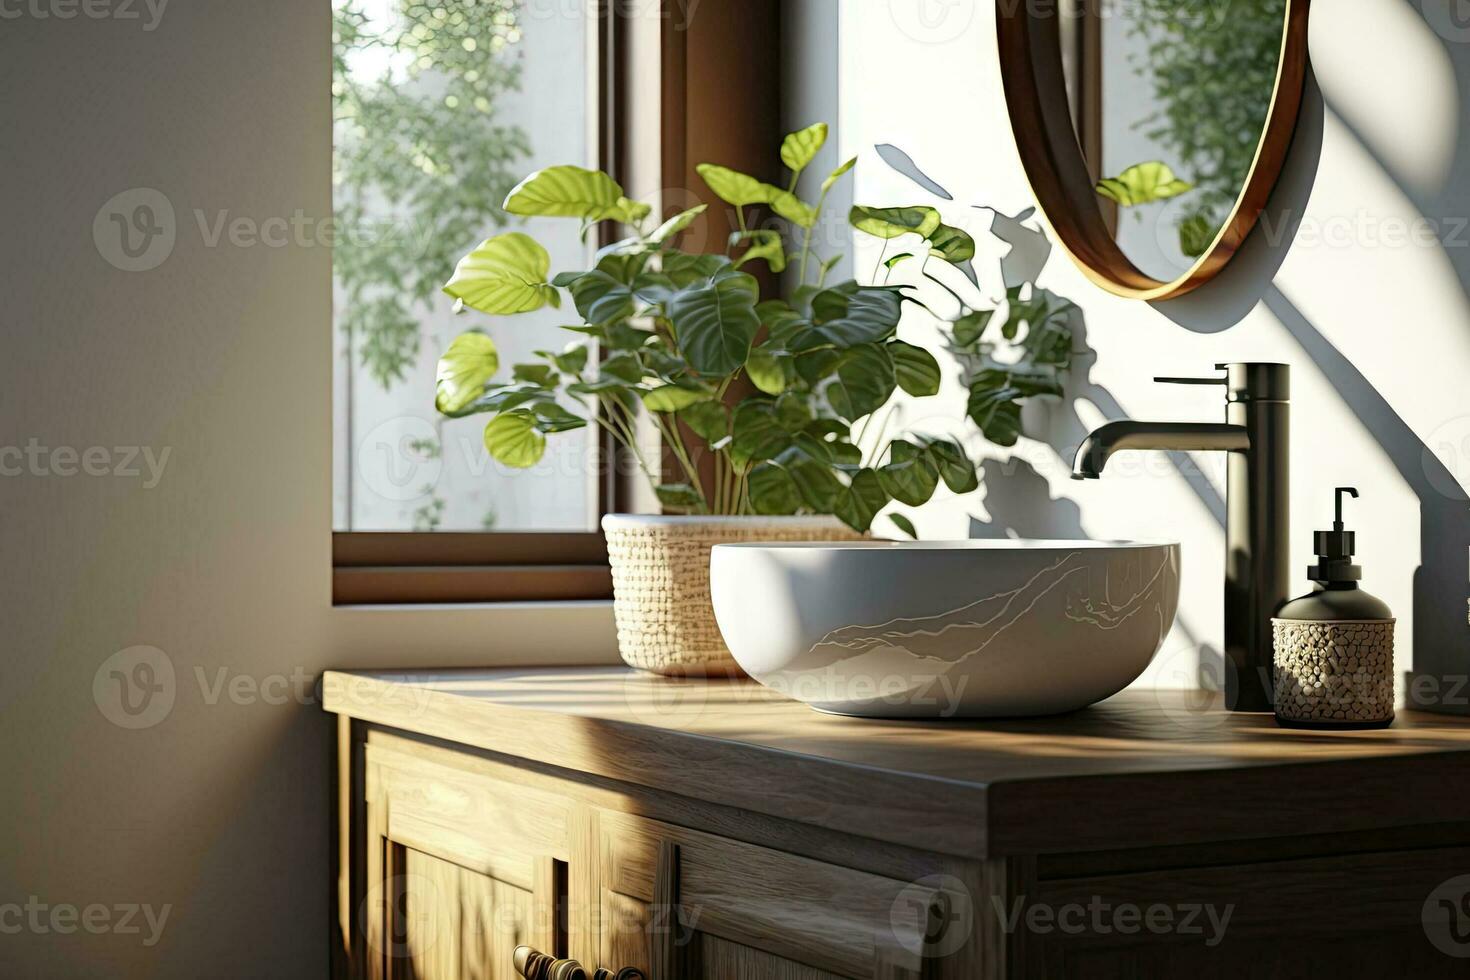 ett trä- fåfänga disken med vitkeramik tvättställ och modern stil kran i en badrum med morgon- solljus och skugga. tom Plats för Produkter visa attrapp foto